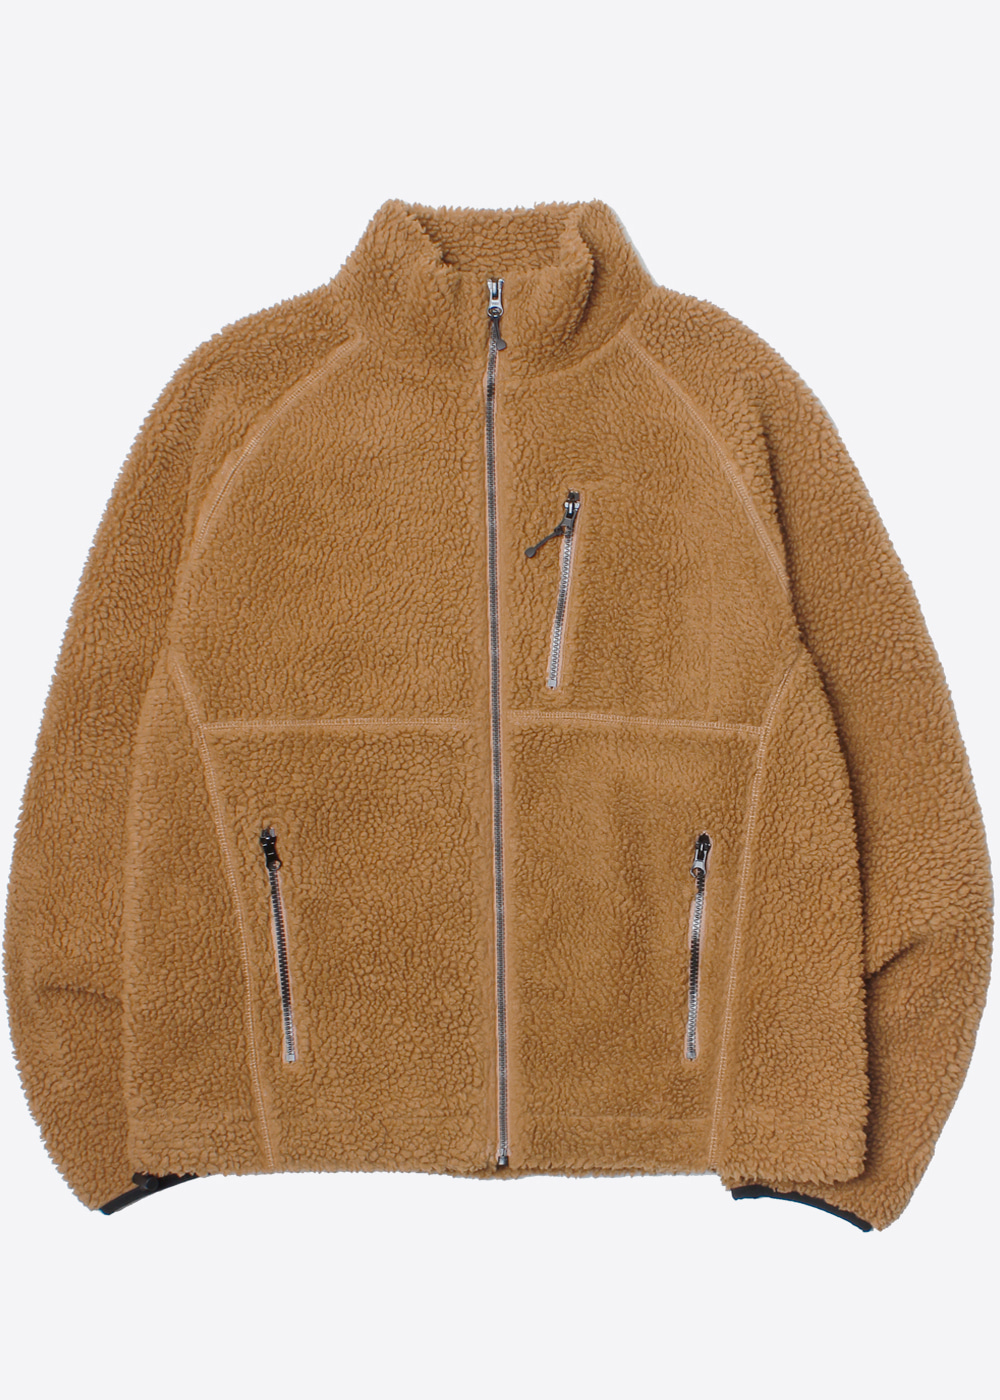 INHERIT BY JOURNAL STANDARD’over fit’fleece zip up jacket